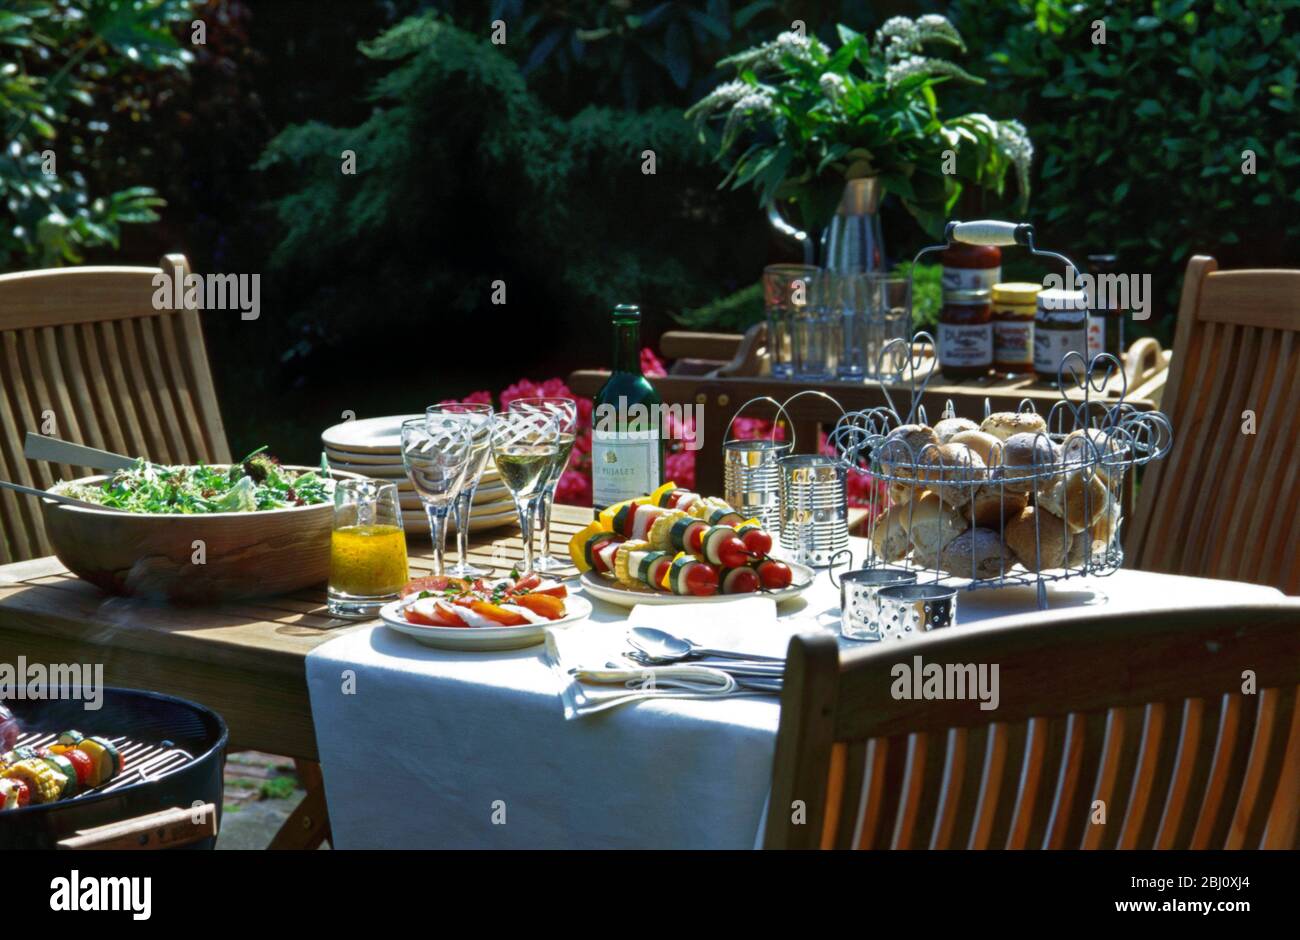 Elegante barbecue tavolo pranzo fuori al sole, insalata in grande ciotola di legno, insalata di pomodoro e mozzarella, kebab di verdure, condimento olio d'oliva, pane r Foto Stock